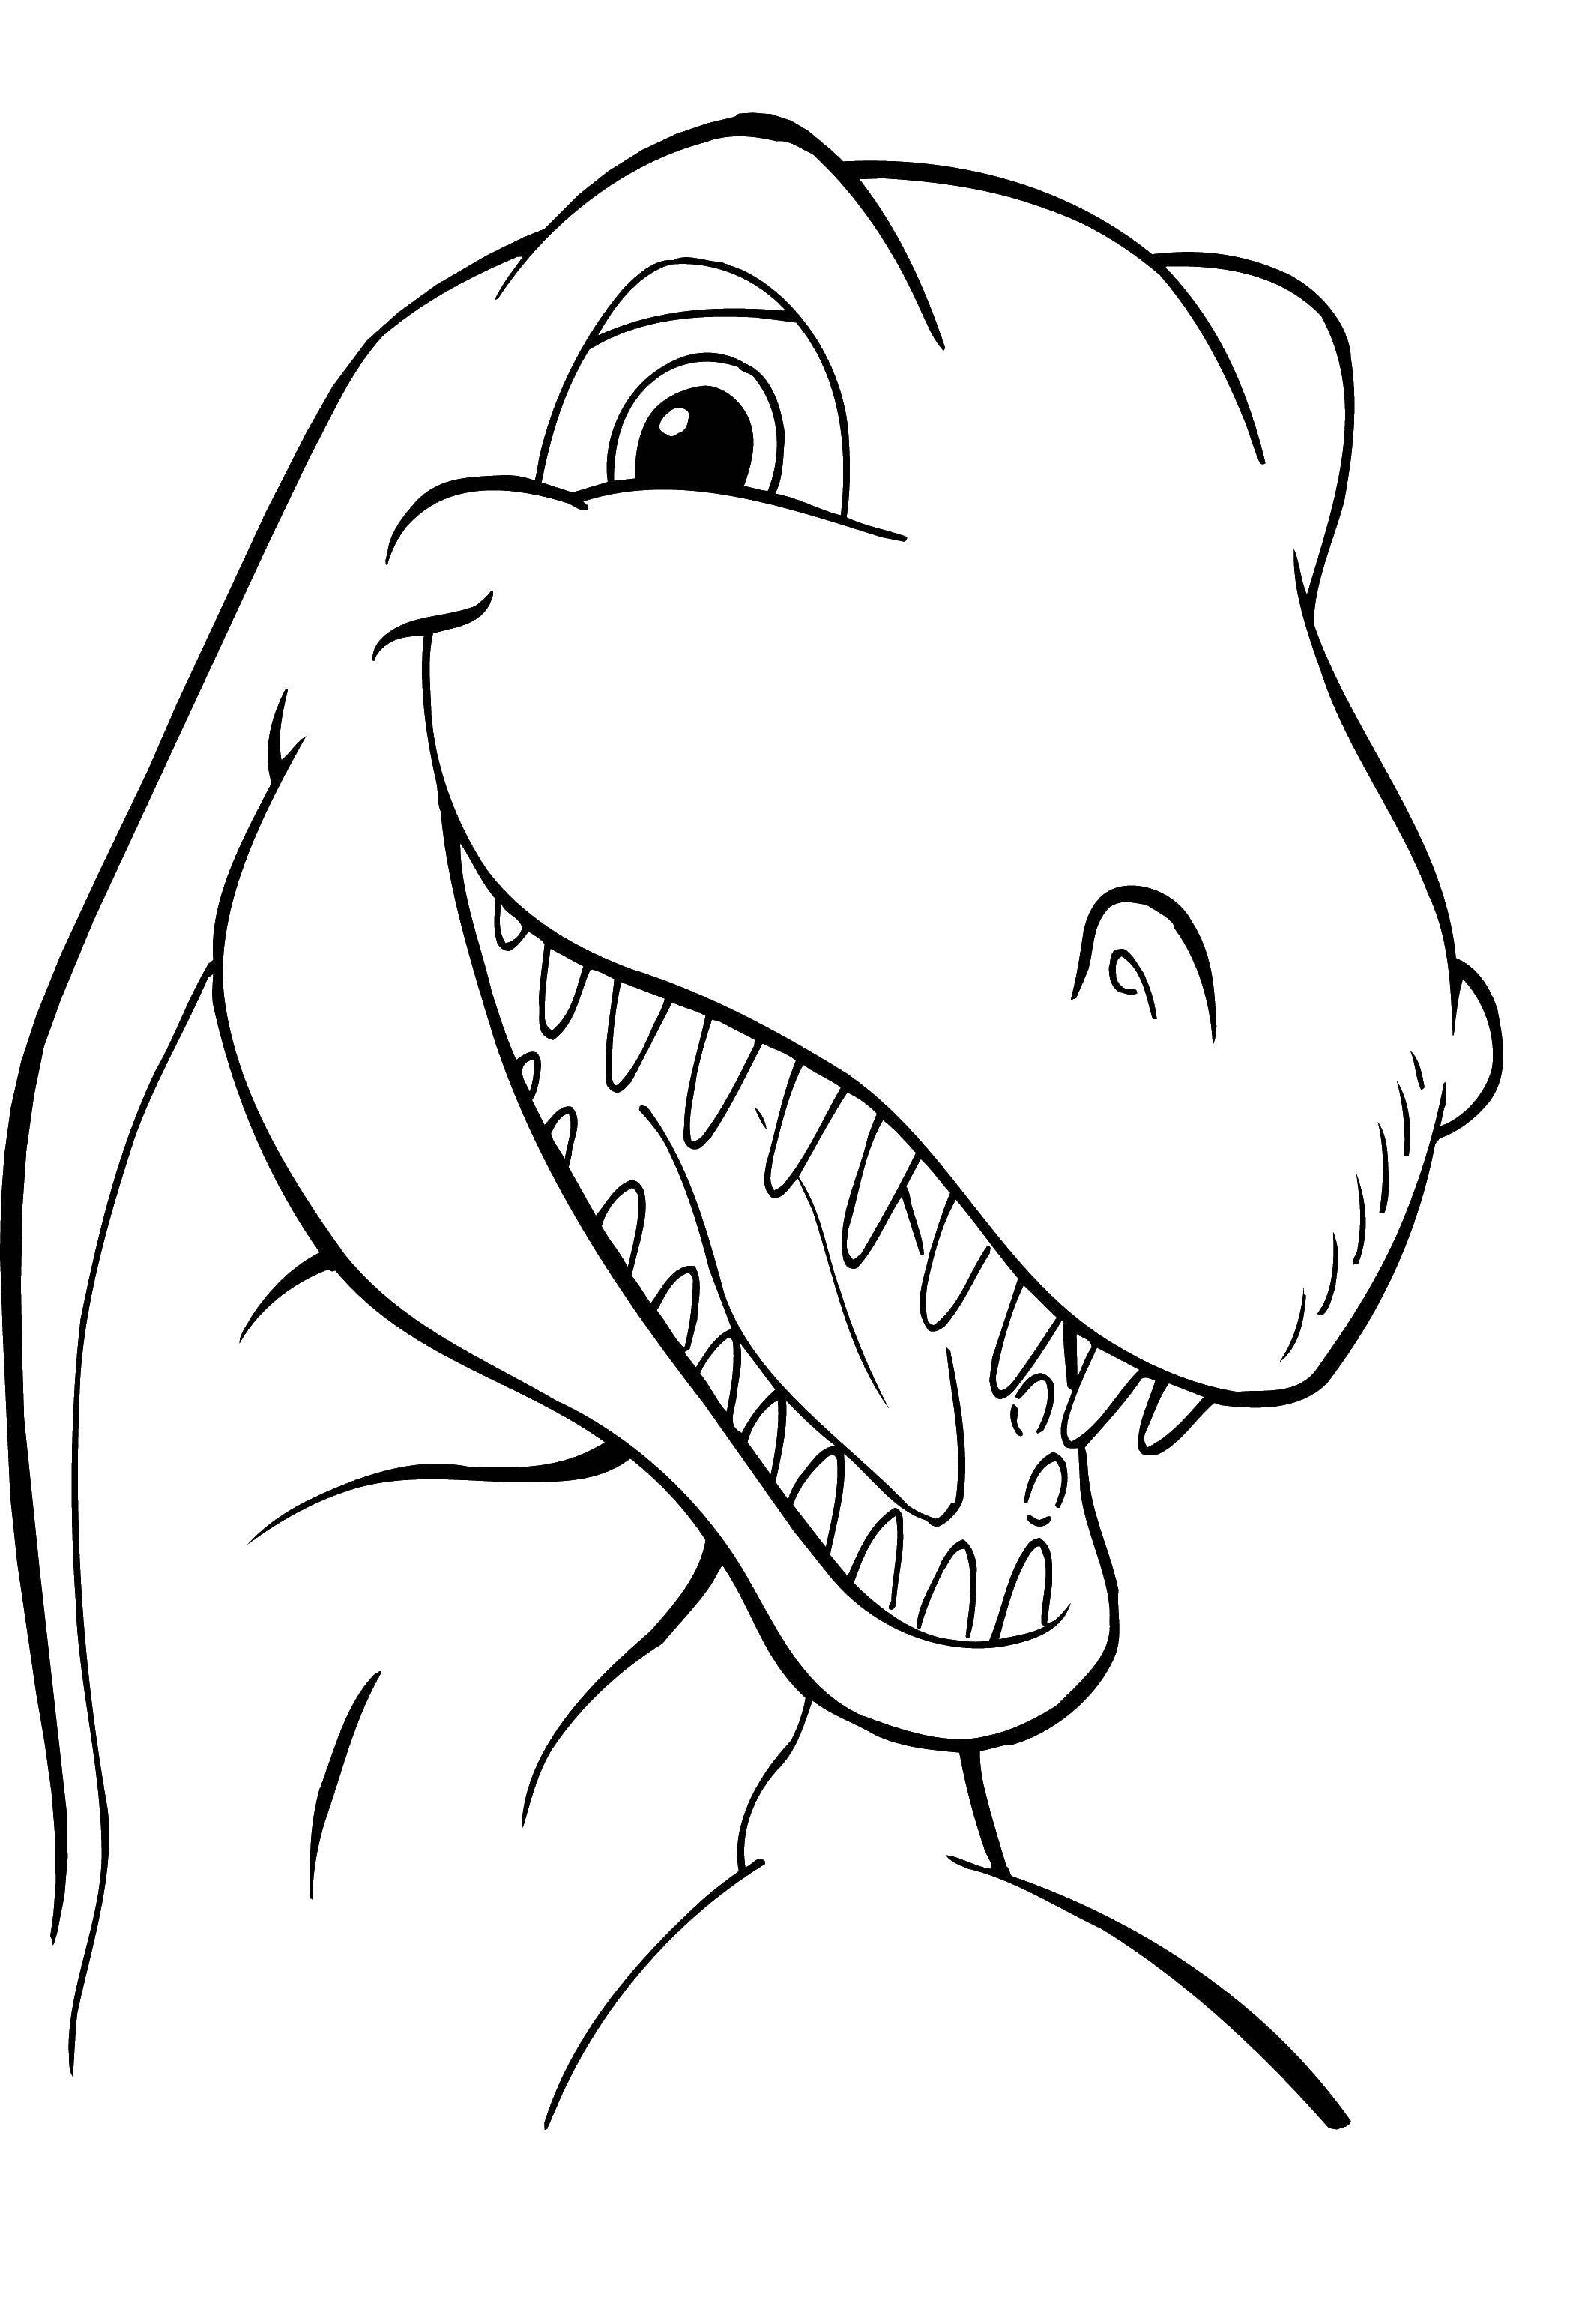 Coloring Fun dinosaur. Category dinosaur. Tags:  Dinosaurs.